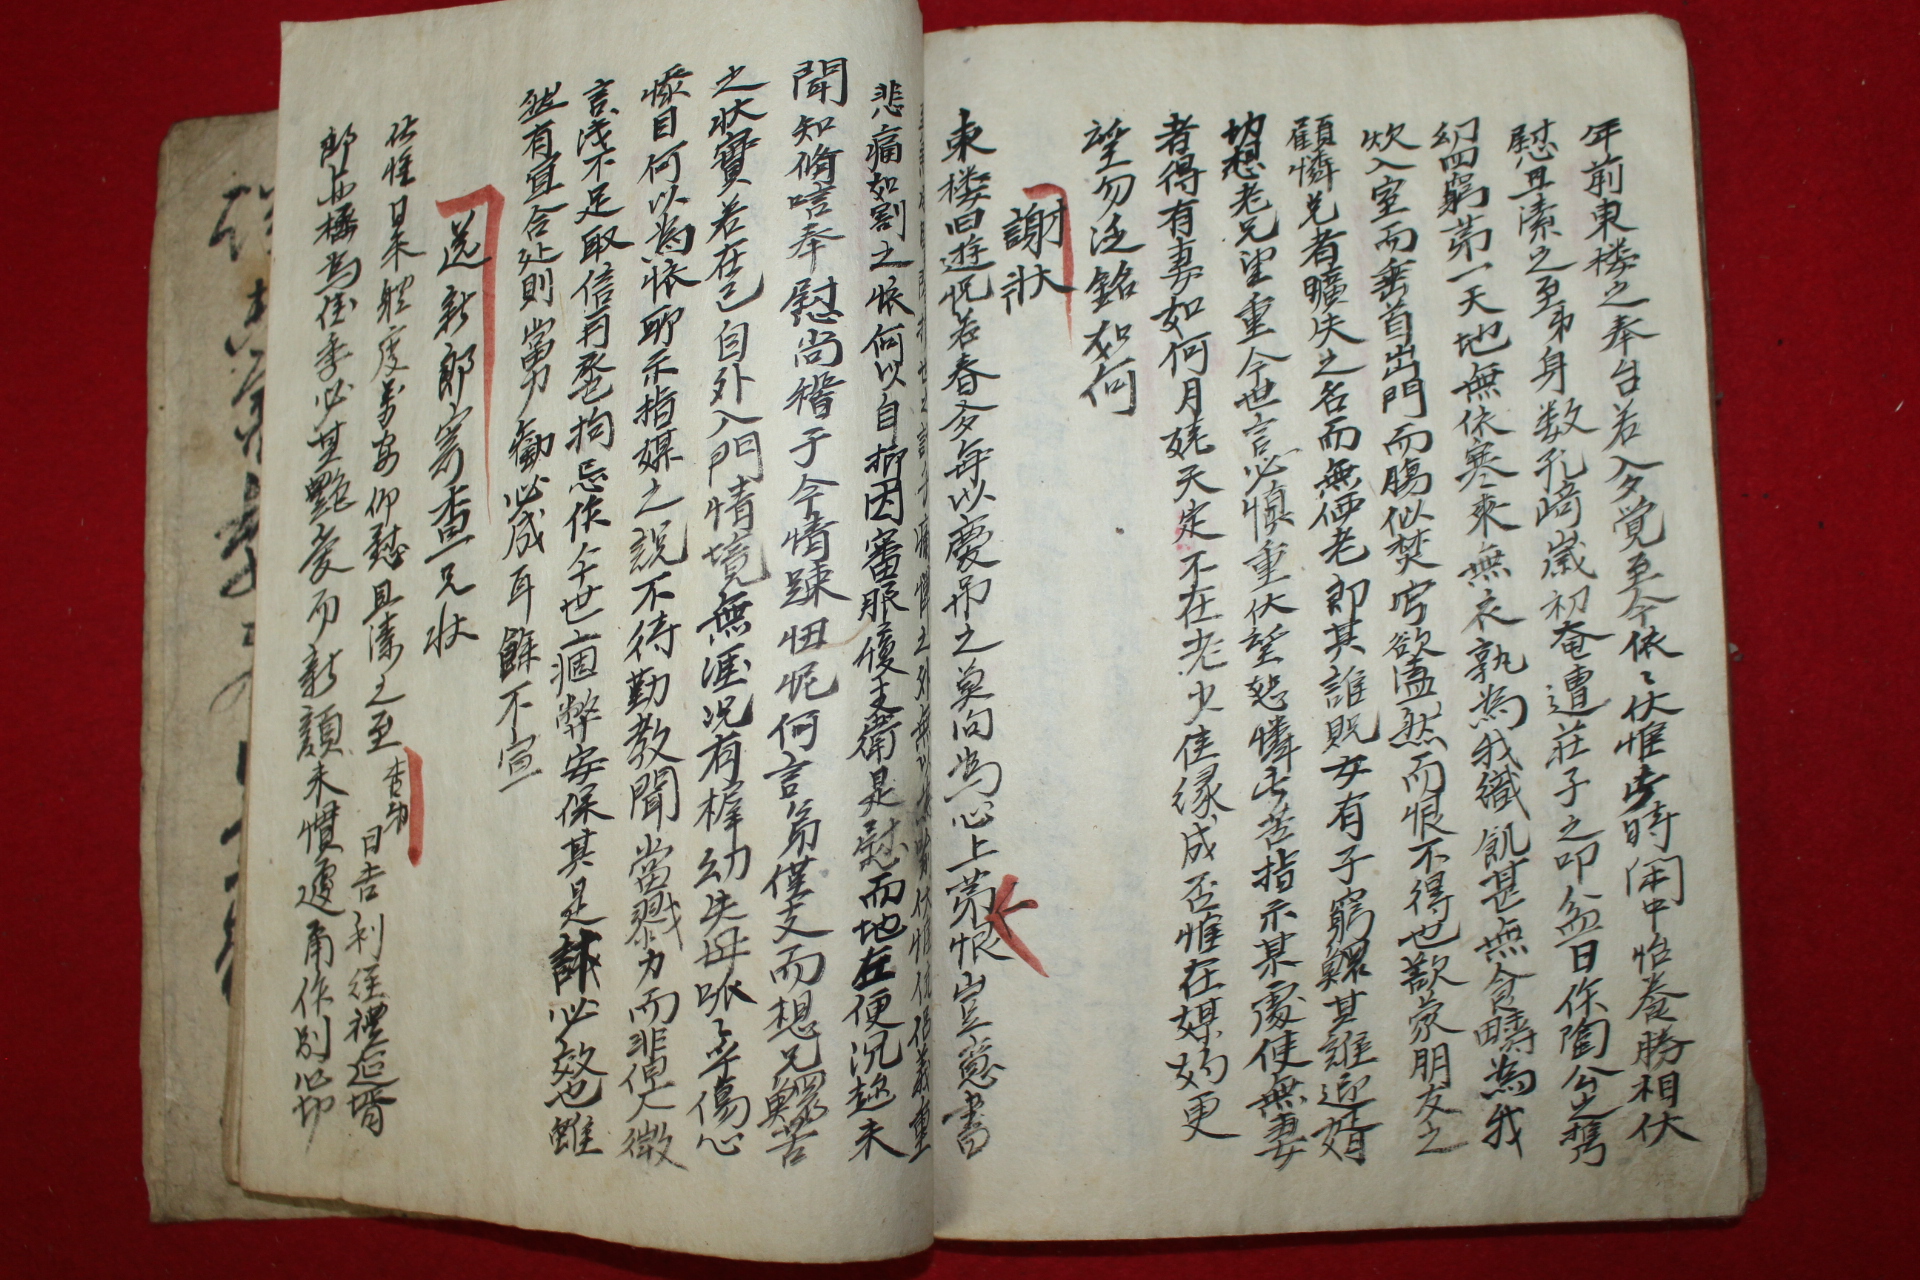 조선시대 필사본 척독대방략초(尺牘大方略抄)